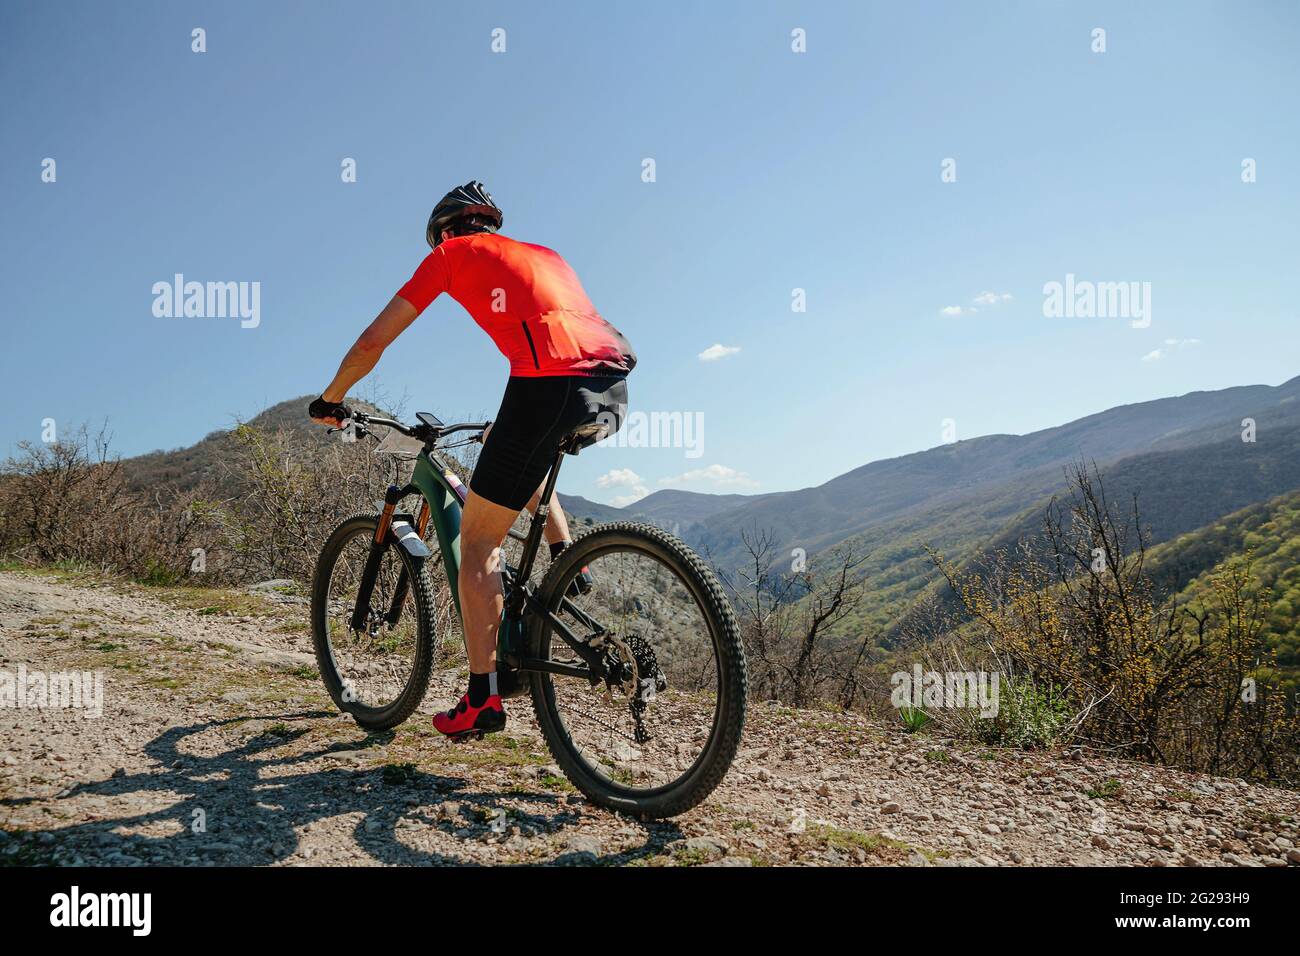 Mann auf Fahrrad Reiten Bergweg im Hintergrund blauen Himmel und Berge Stockfoto